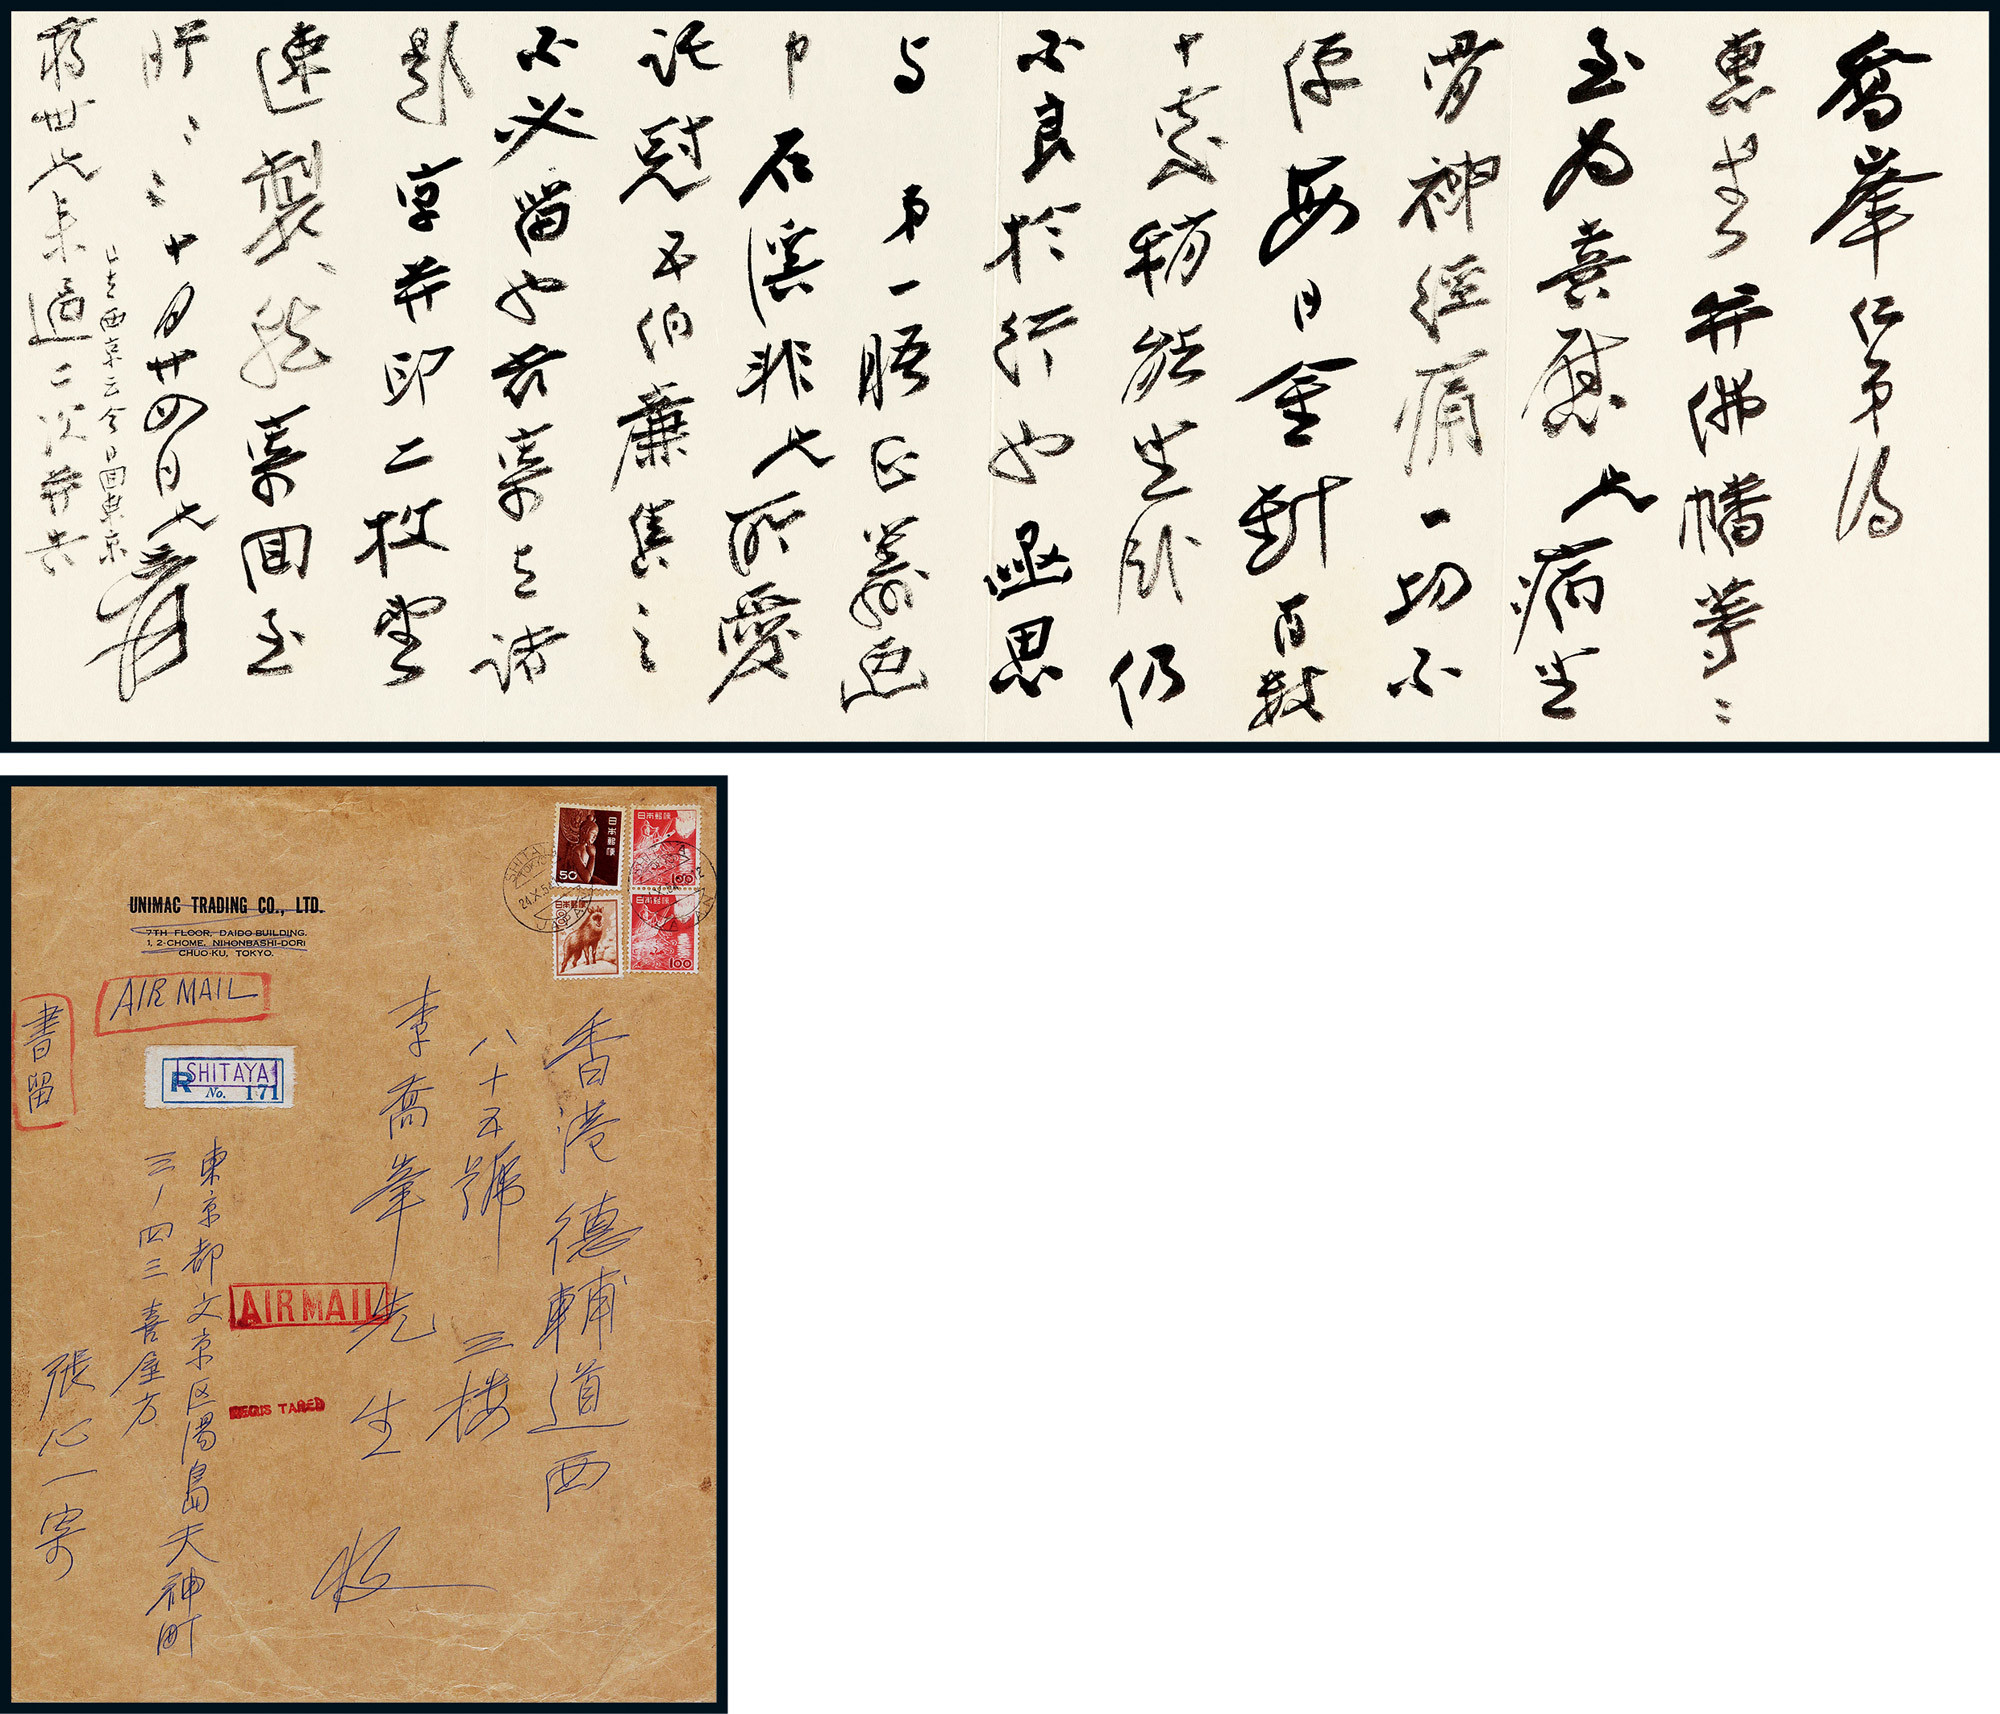 A letter from Zhang Daqian to Li Qiaofeng with original envelope